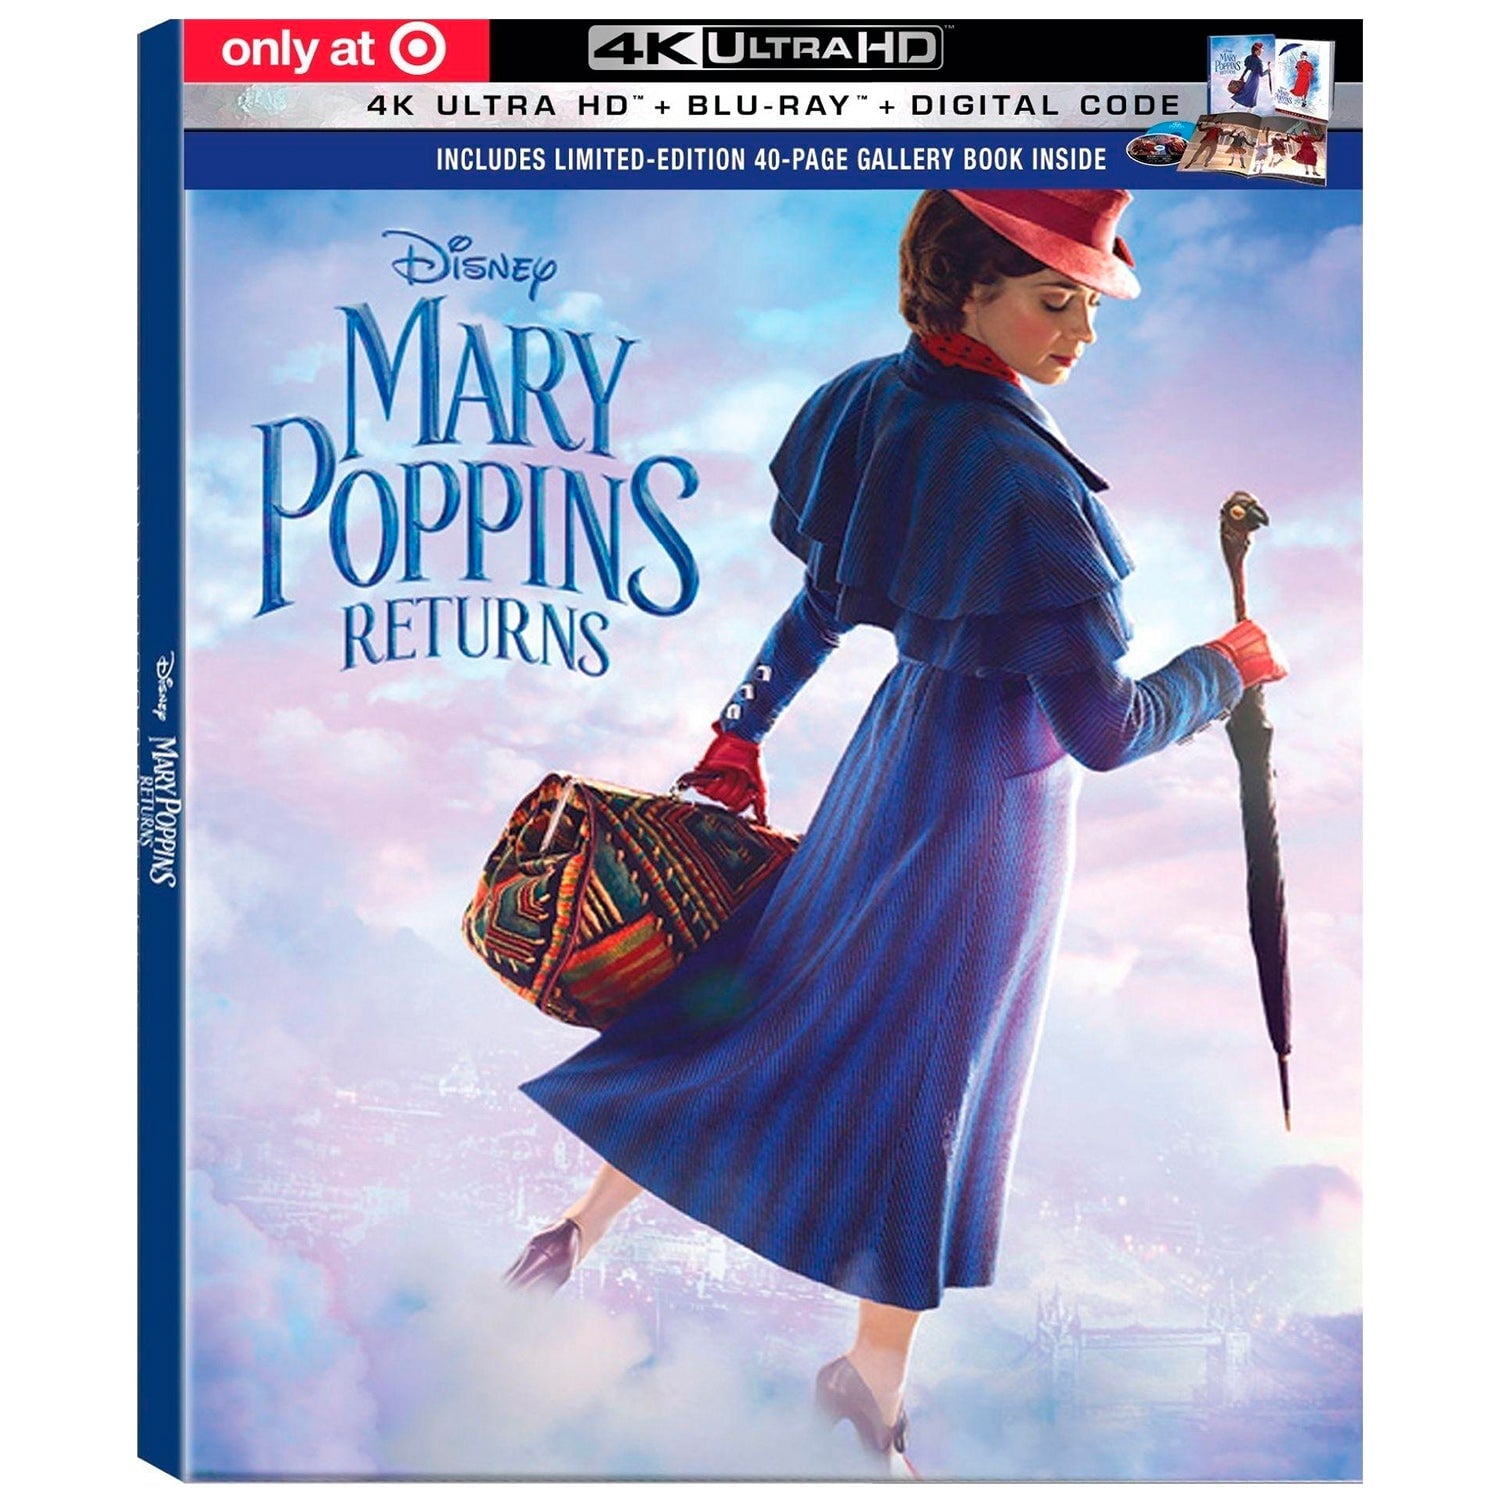 Мэри Поппинс возвращается (2018) (англ. язык) (4K UHD + Blu-ray) Коллекционное издание